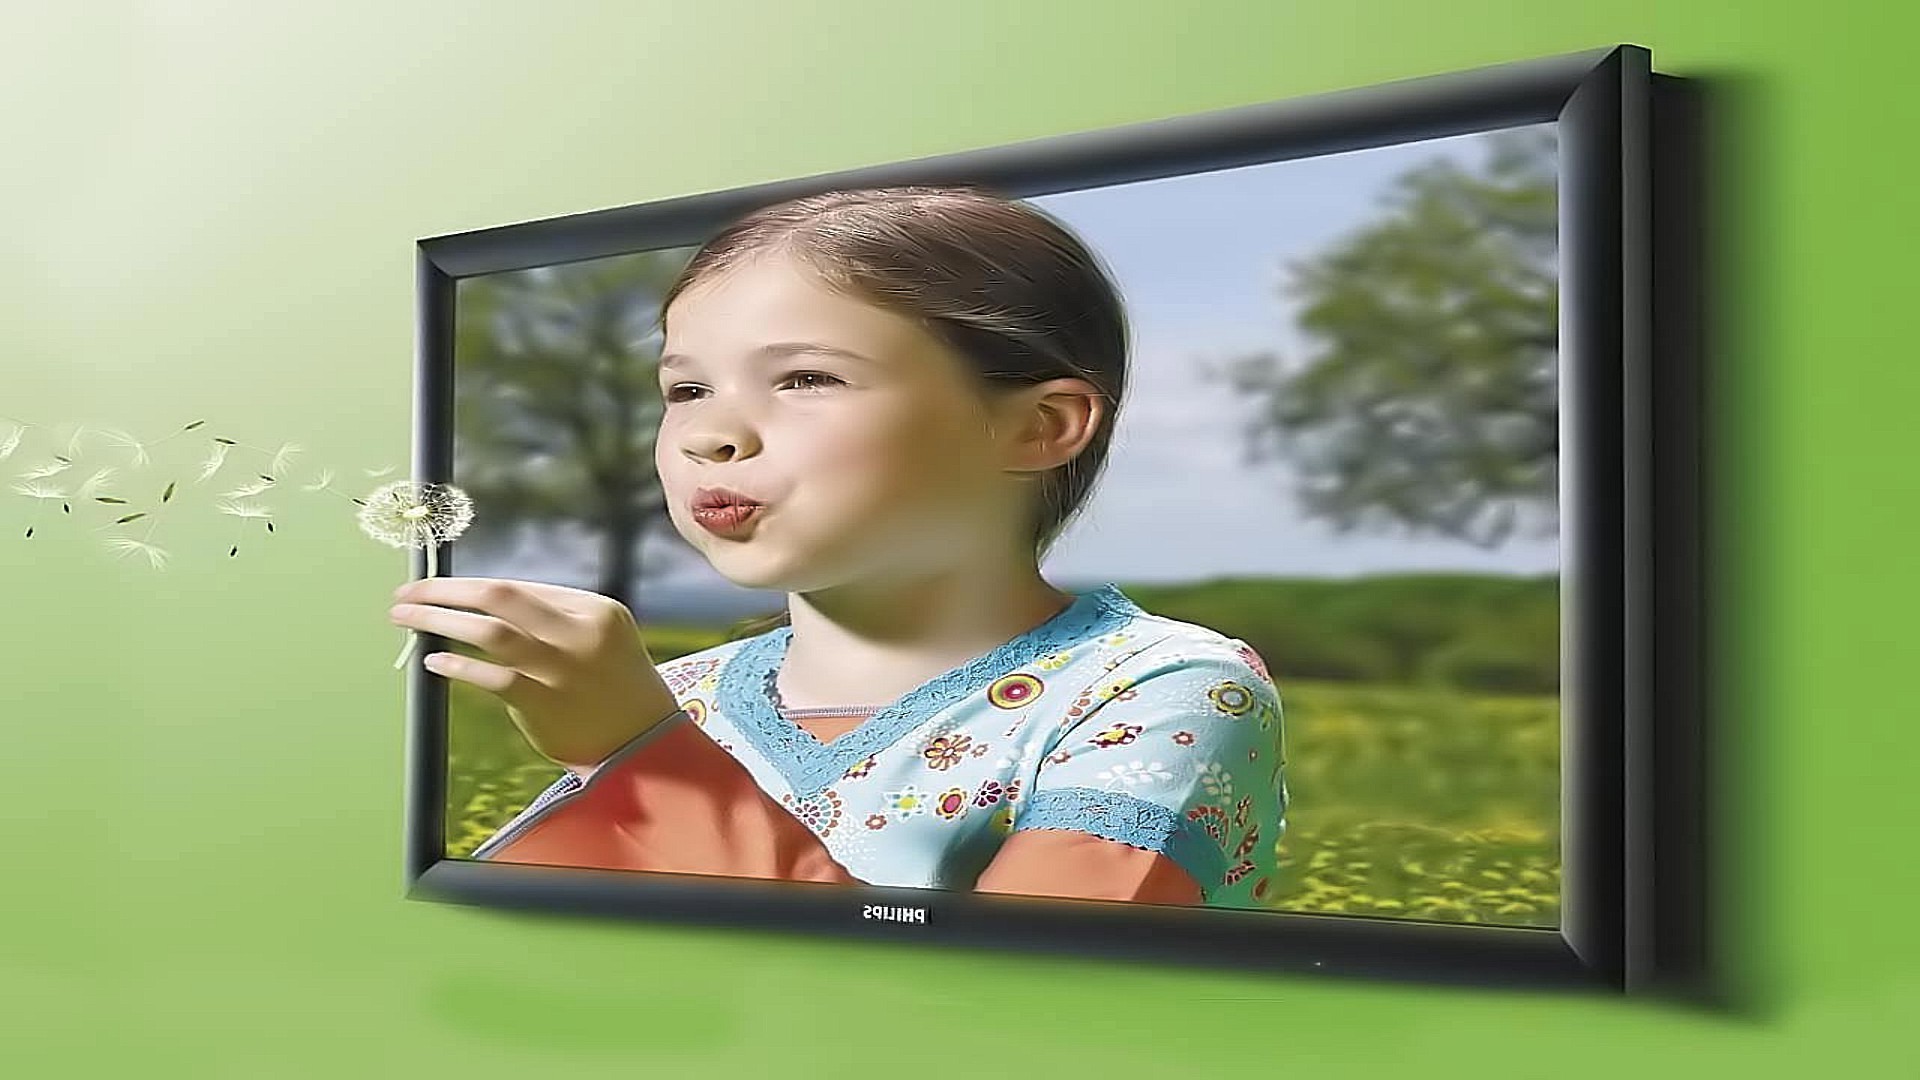 люди технология ребенок компьютер ноутбук интернет женщина девушка подключение счастье экран один портрет выражение лица